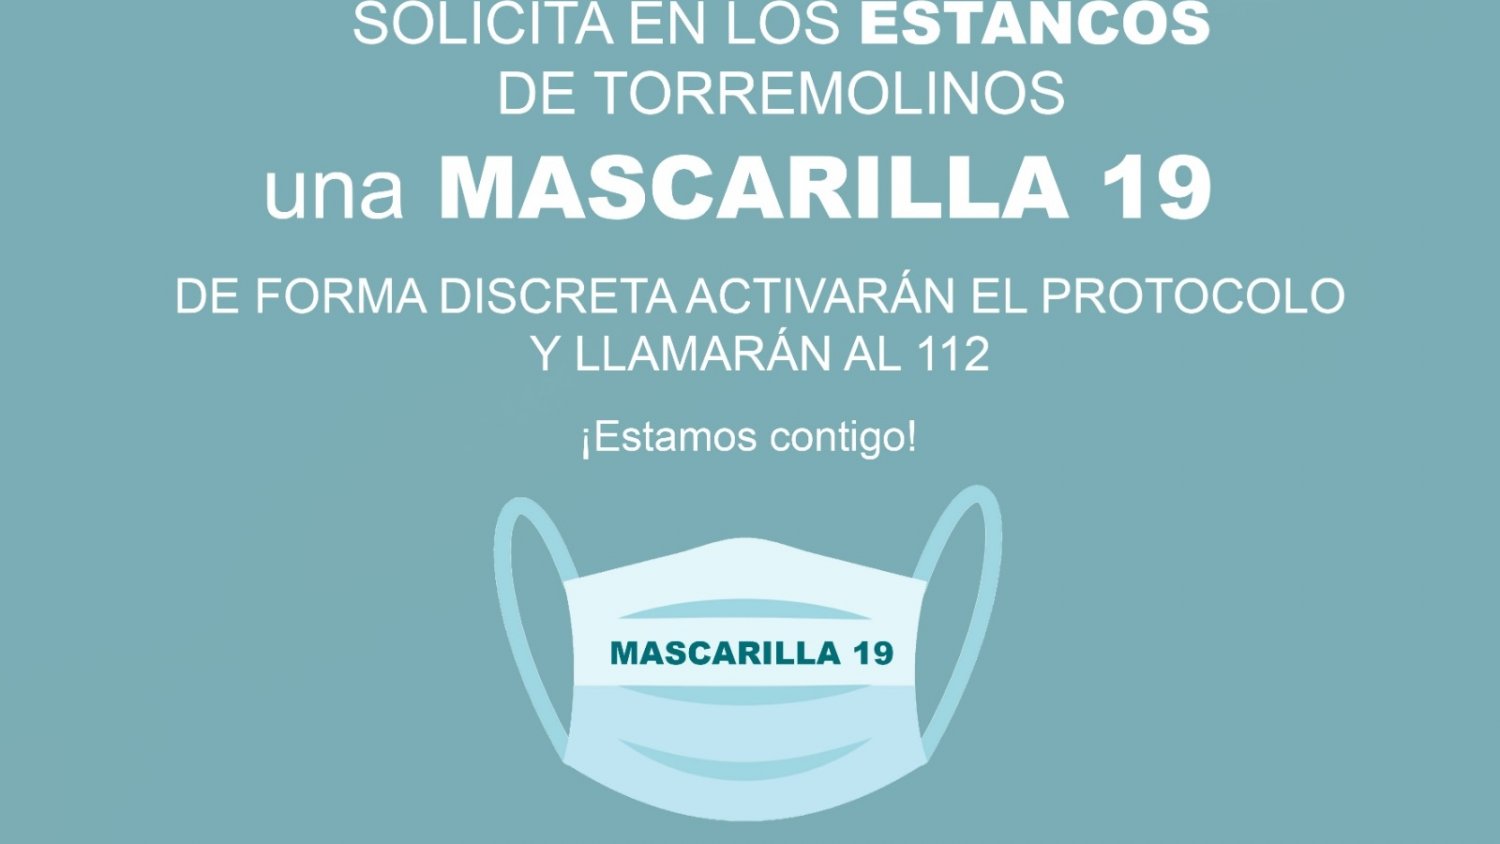 Los estancos de Torremolinos se suman a la iniciativa 'Mascarilla 19' para prevenir la violencia de género